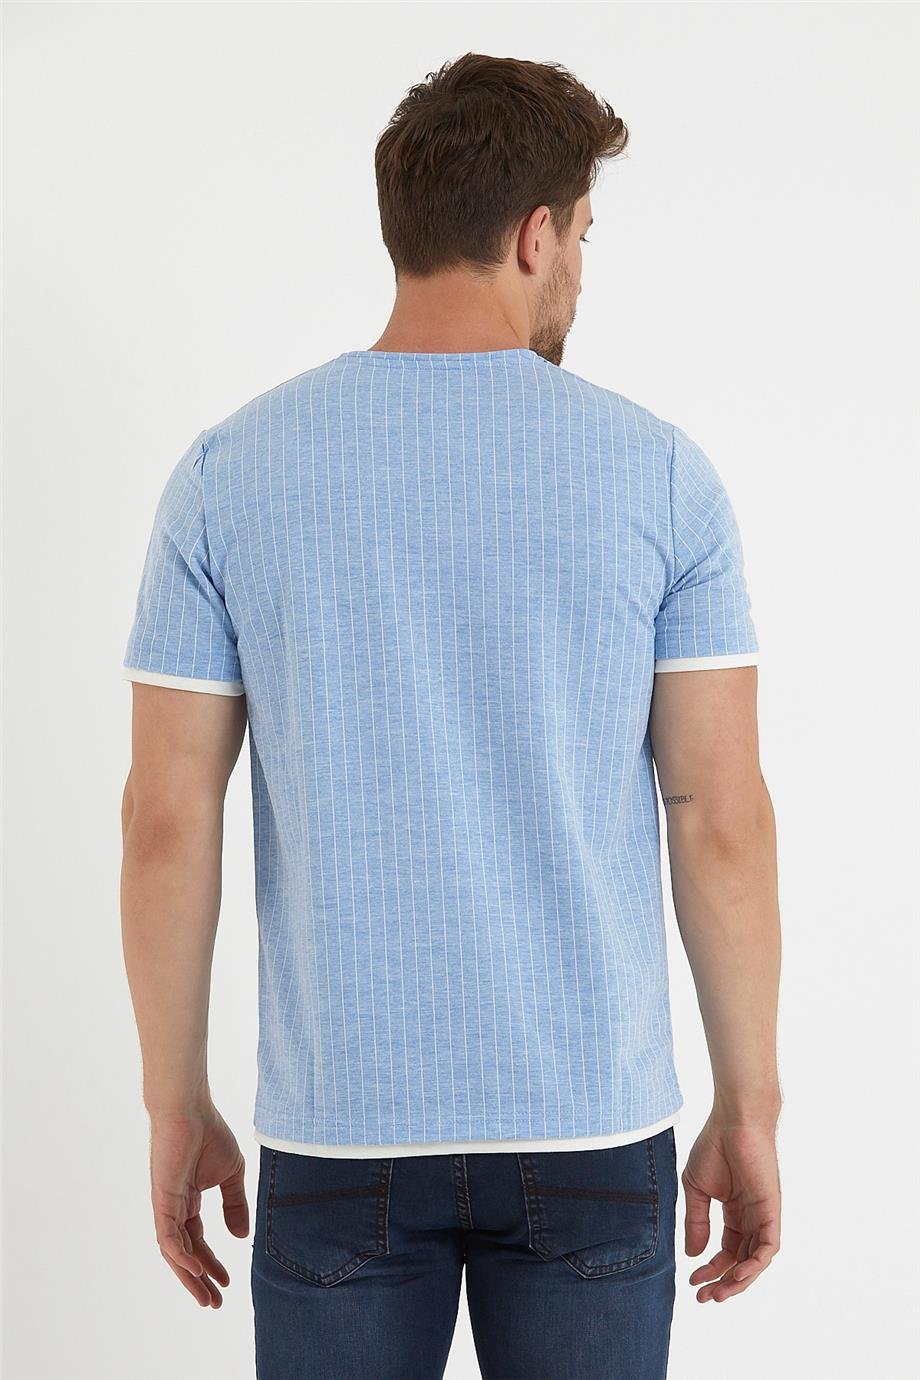 Erkek Dikey Çizgili O Yaka Basic Tişört 3010 - Mavi - Beyaz - Bisiklet yaka çizgili  tişört